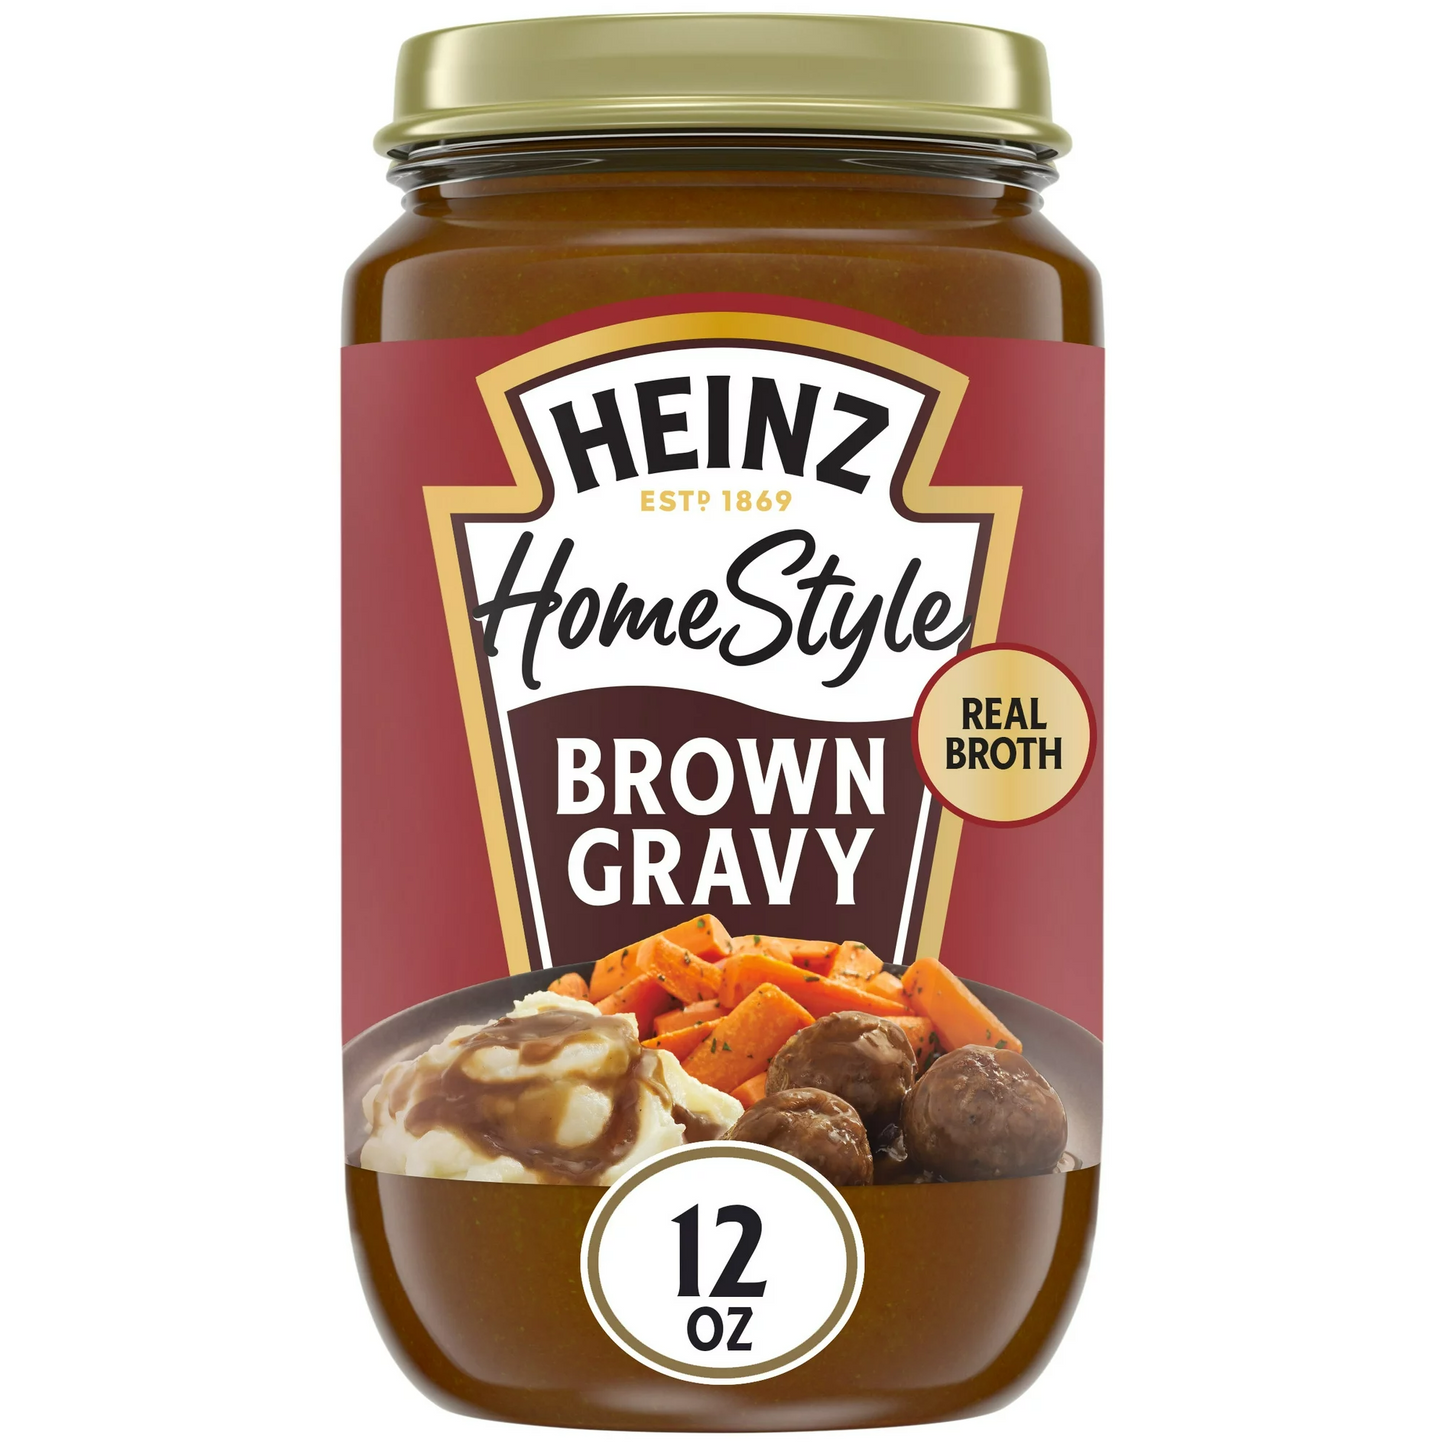 Heinz HomeStyle Brown Gravy, 12 oz Jar